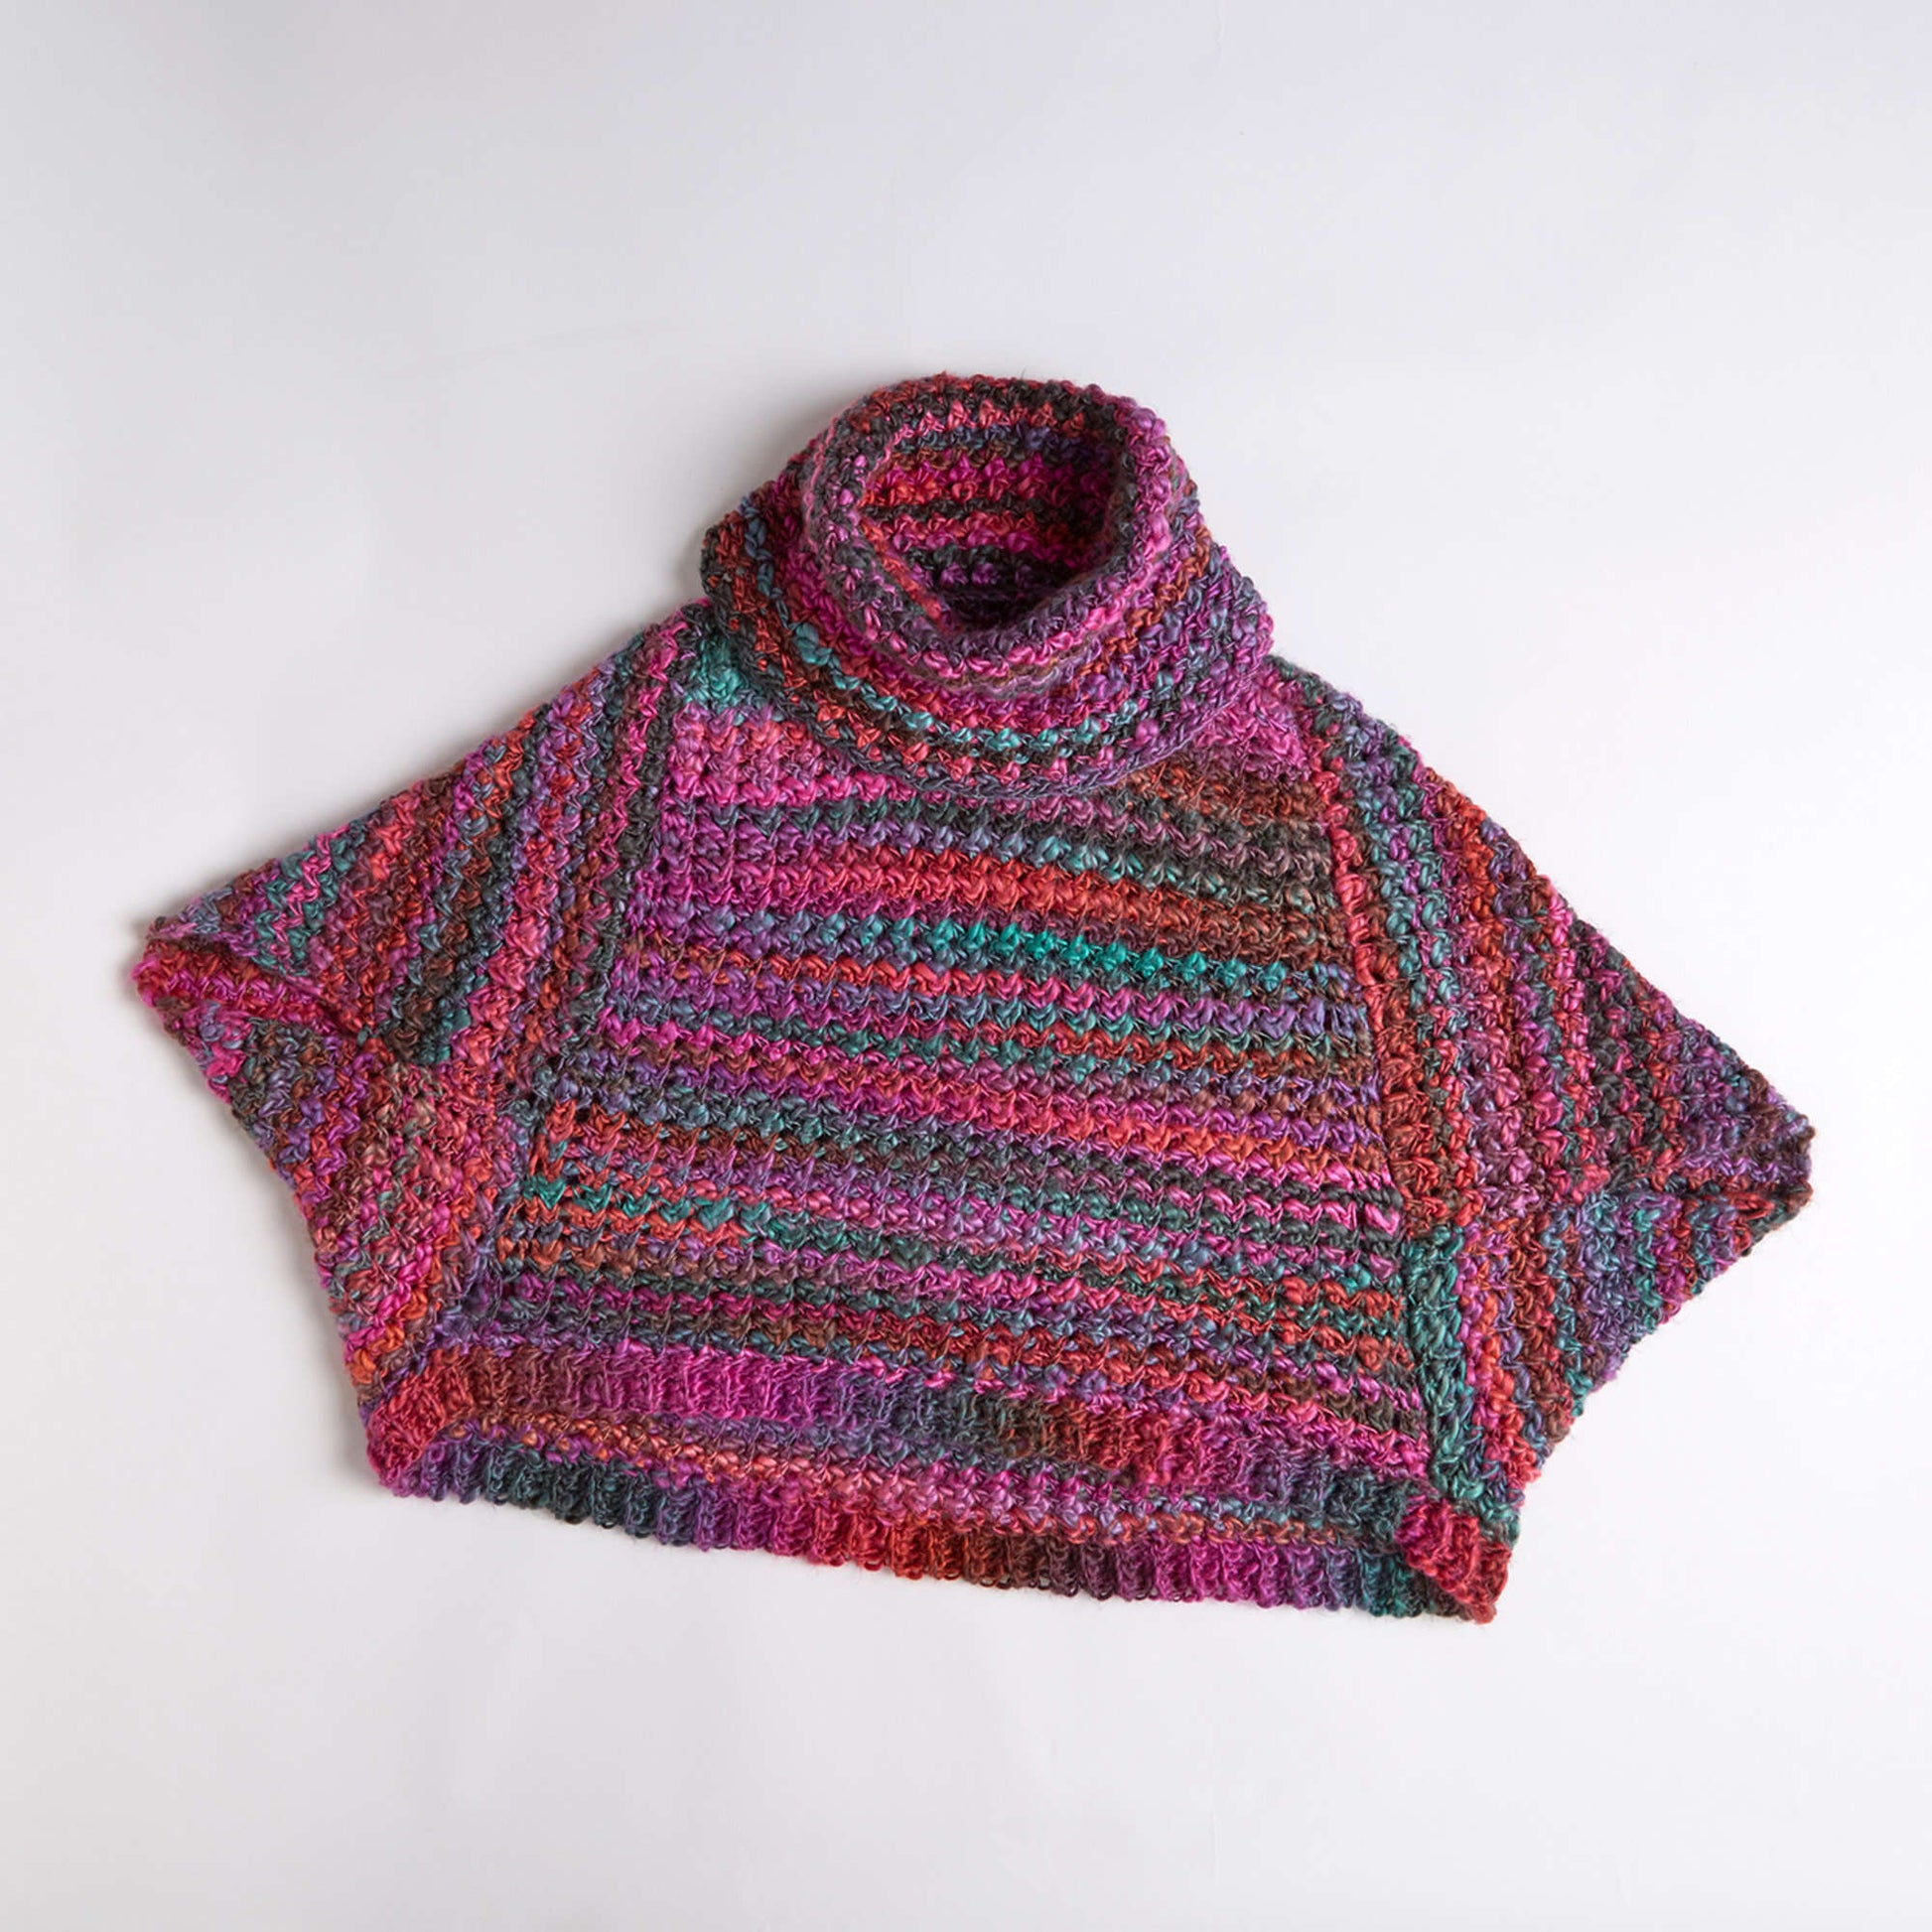 Free Red Heart Origami Swing Sweater Crochet Pattern